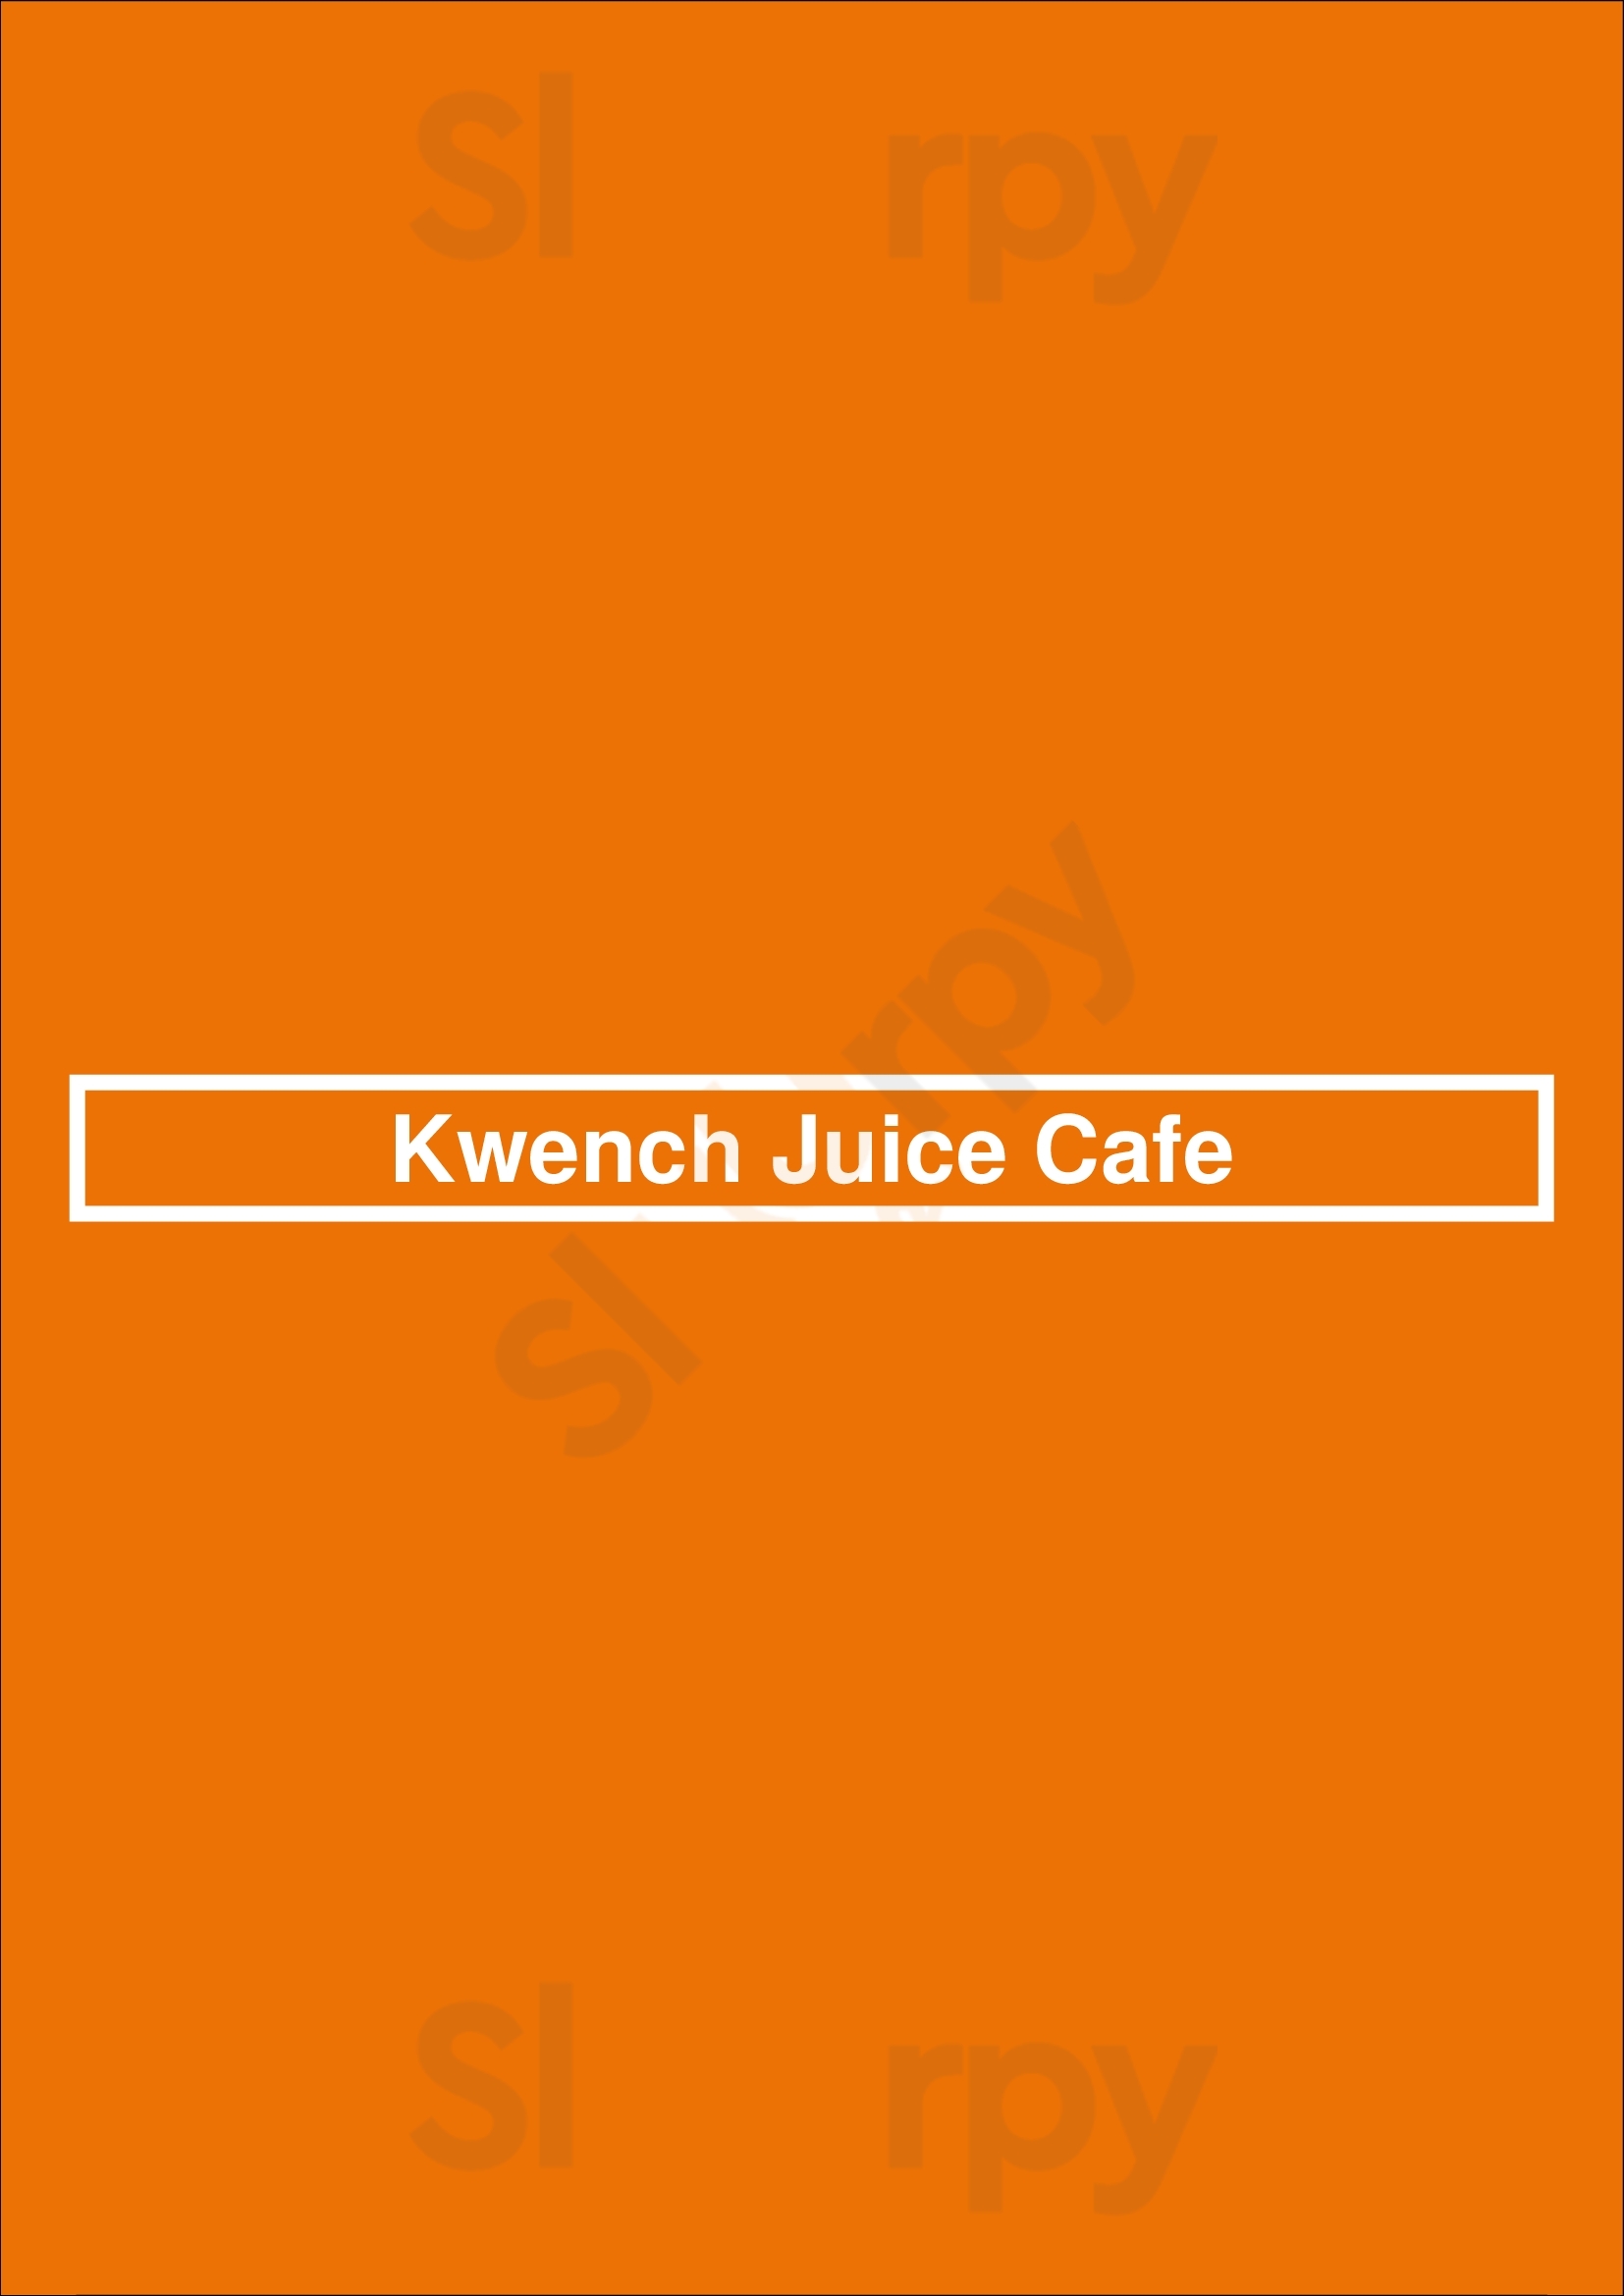 Kwench Juice Cafe Tucson Menu - 1